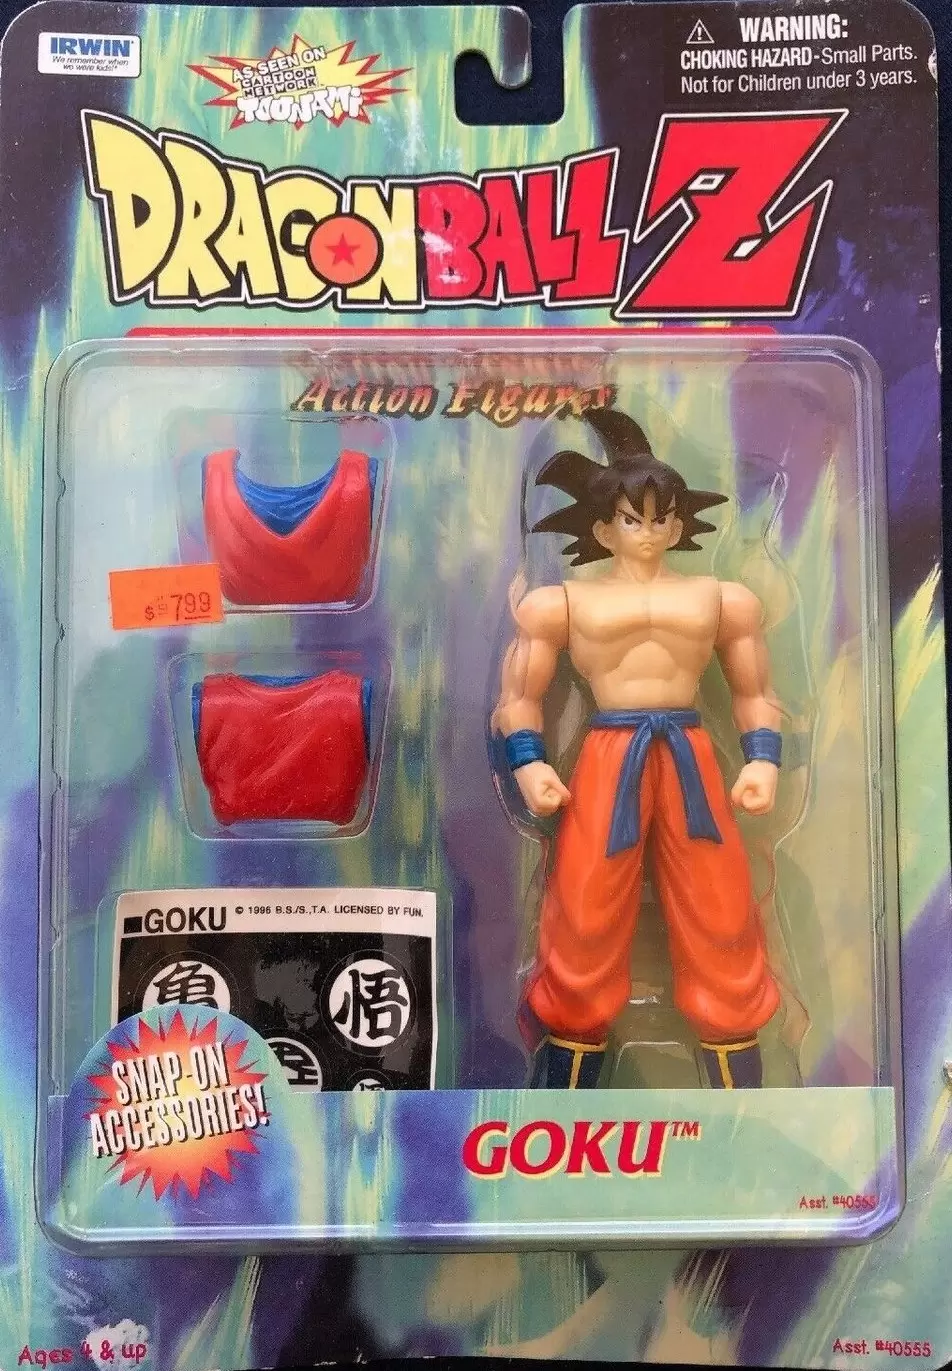 Irwin Toy - Series 4 - Goku